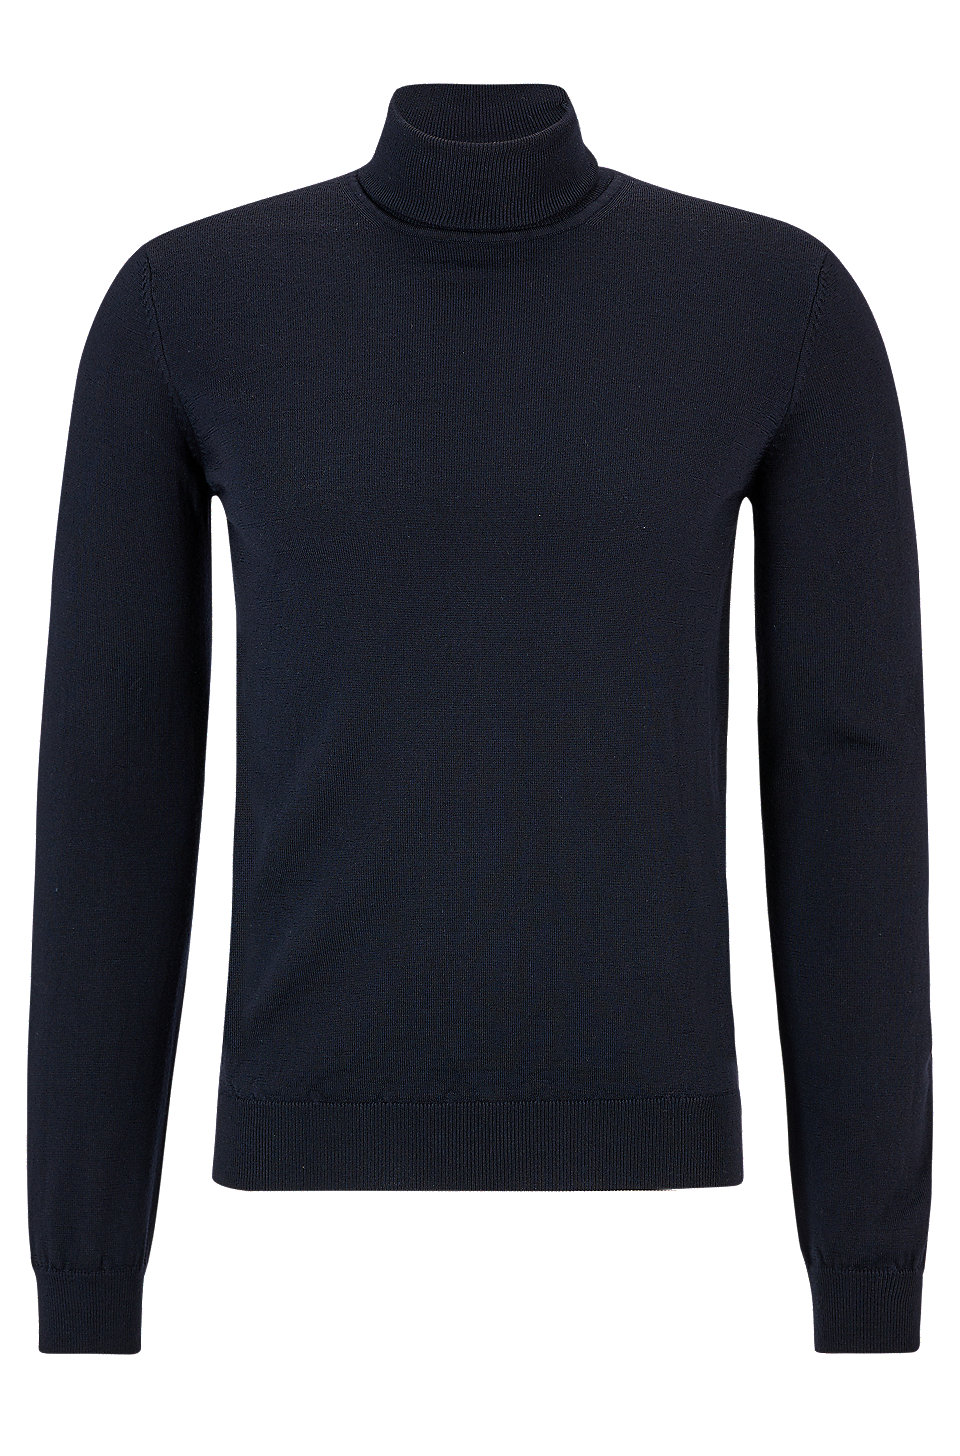 HUGO - Slim-fit rollneck sweater in virgin wool